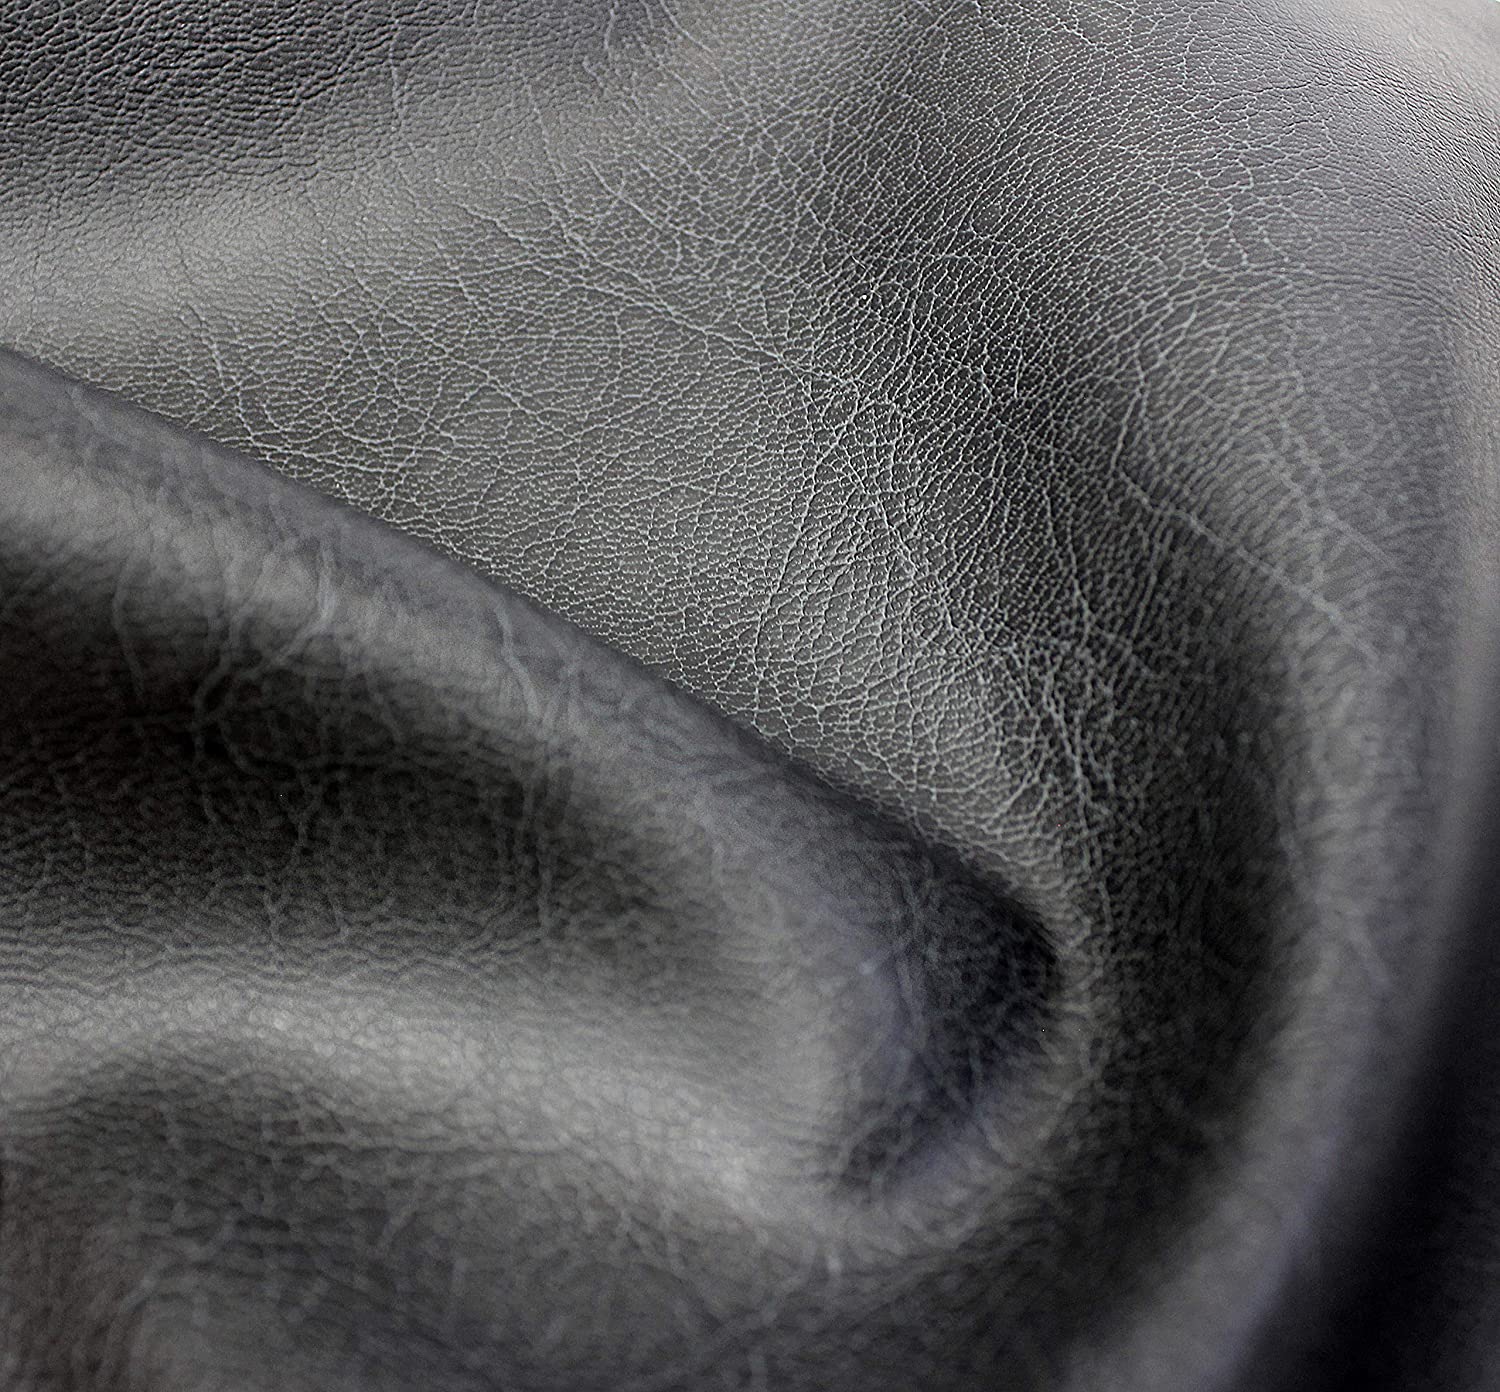 Bycast65 Black Matte Top-Grain Pattern Faux Leather Marine Vinyl